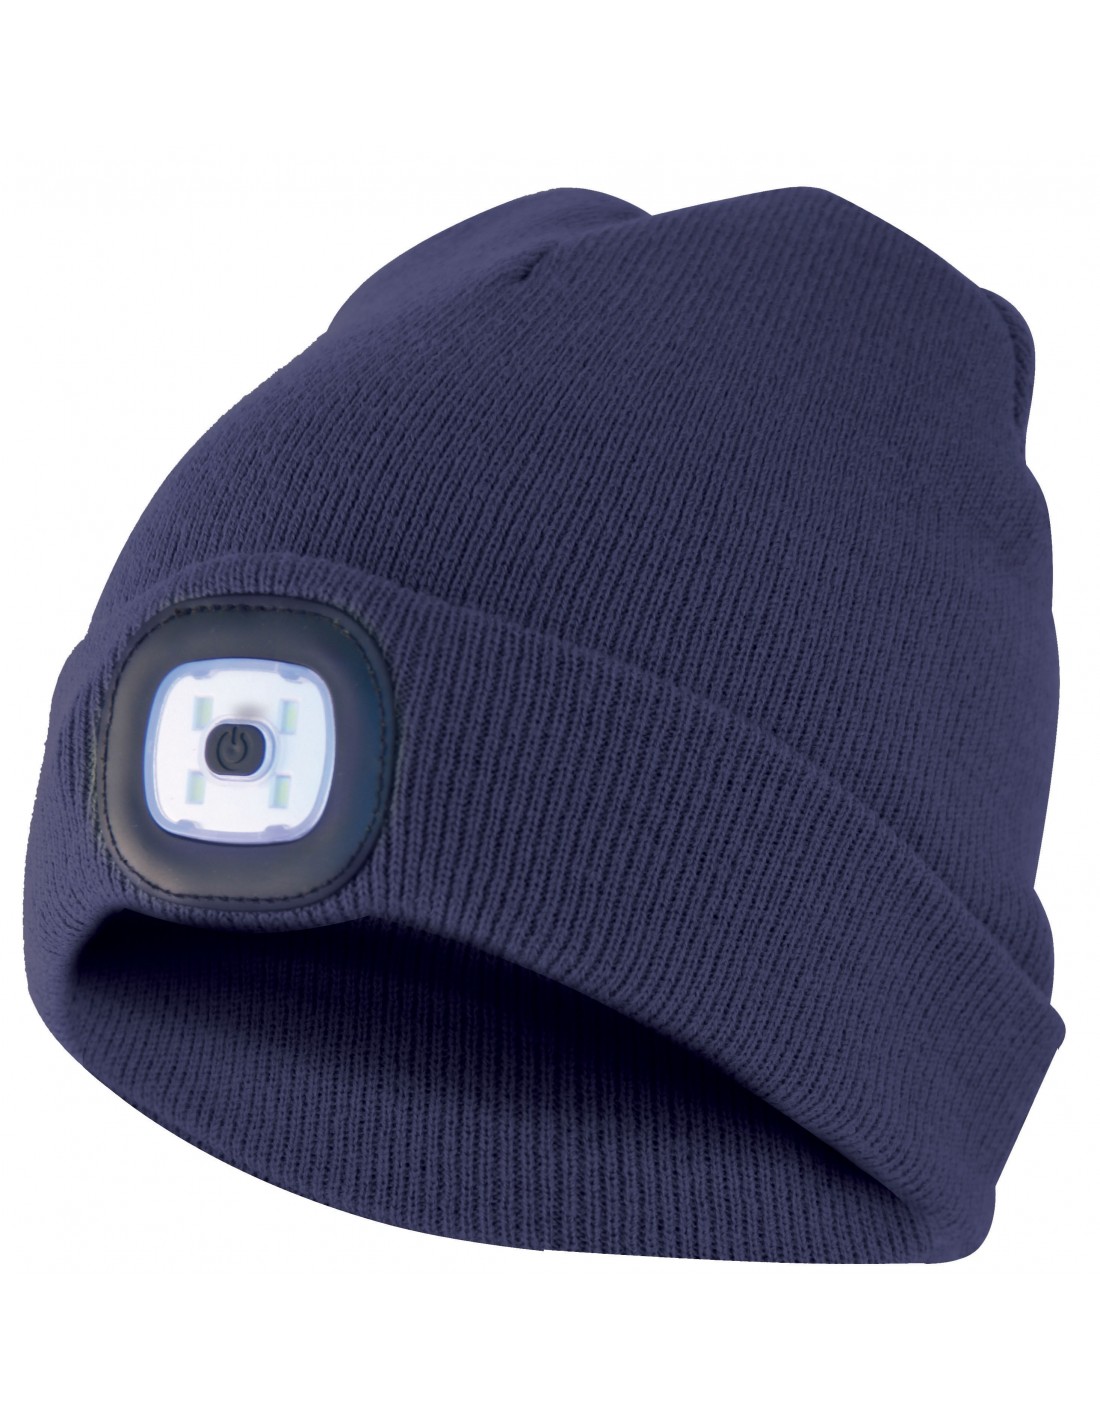 Mütze mit LED-Frontleuchte, Strickmütze mit LED-Licht ideal zum Joggen, Campen, Arbeiten, Spazieren etc., wiederaufladbar per USB und waschbar, dunkelblau